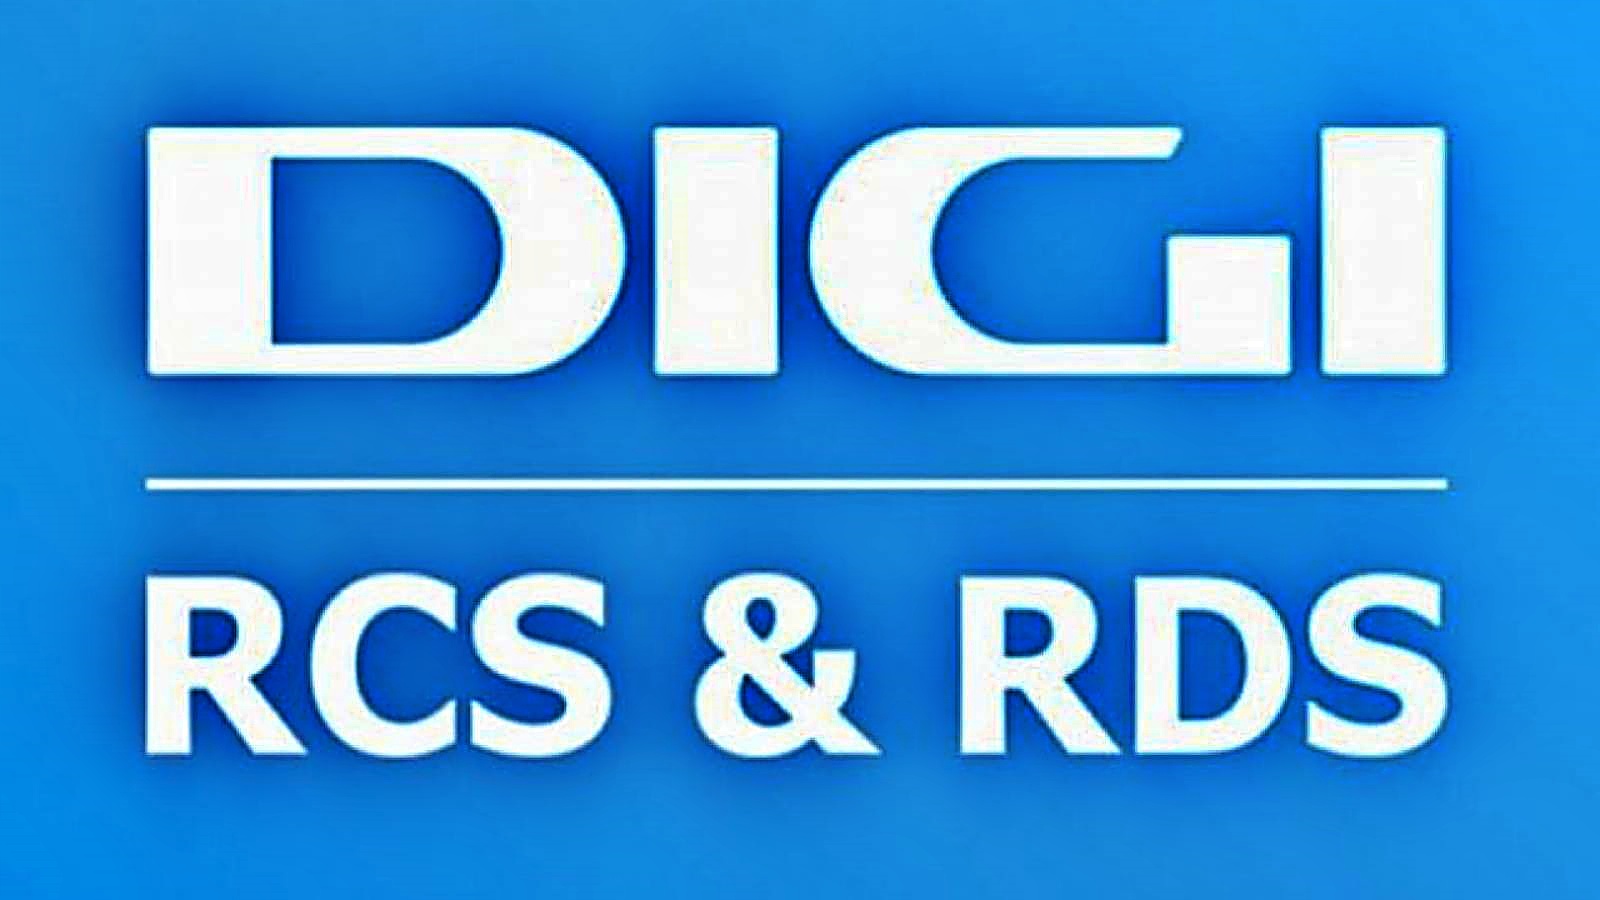 DIGI RCS & RDS Officiële informatie Maak het bedrijf publiekelijk bekend